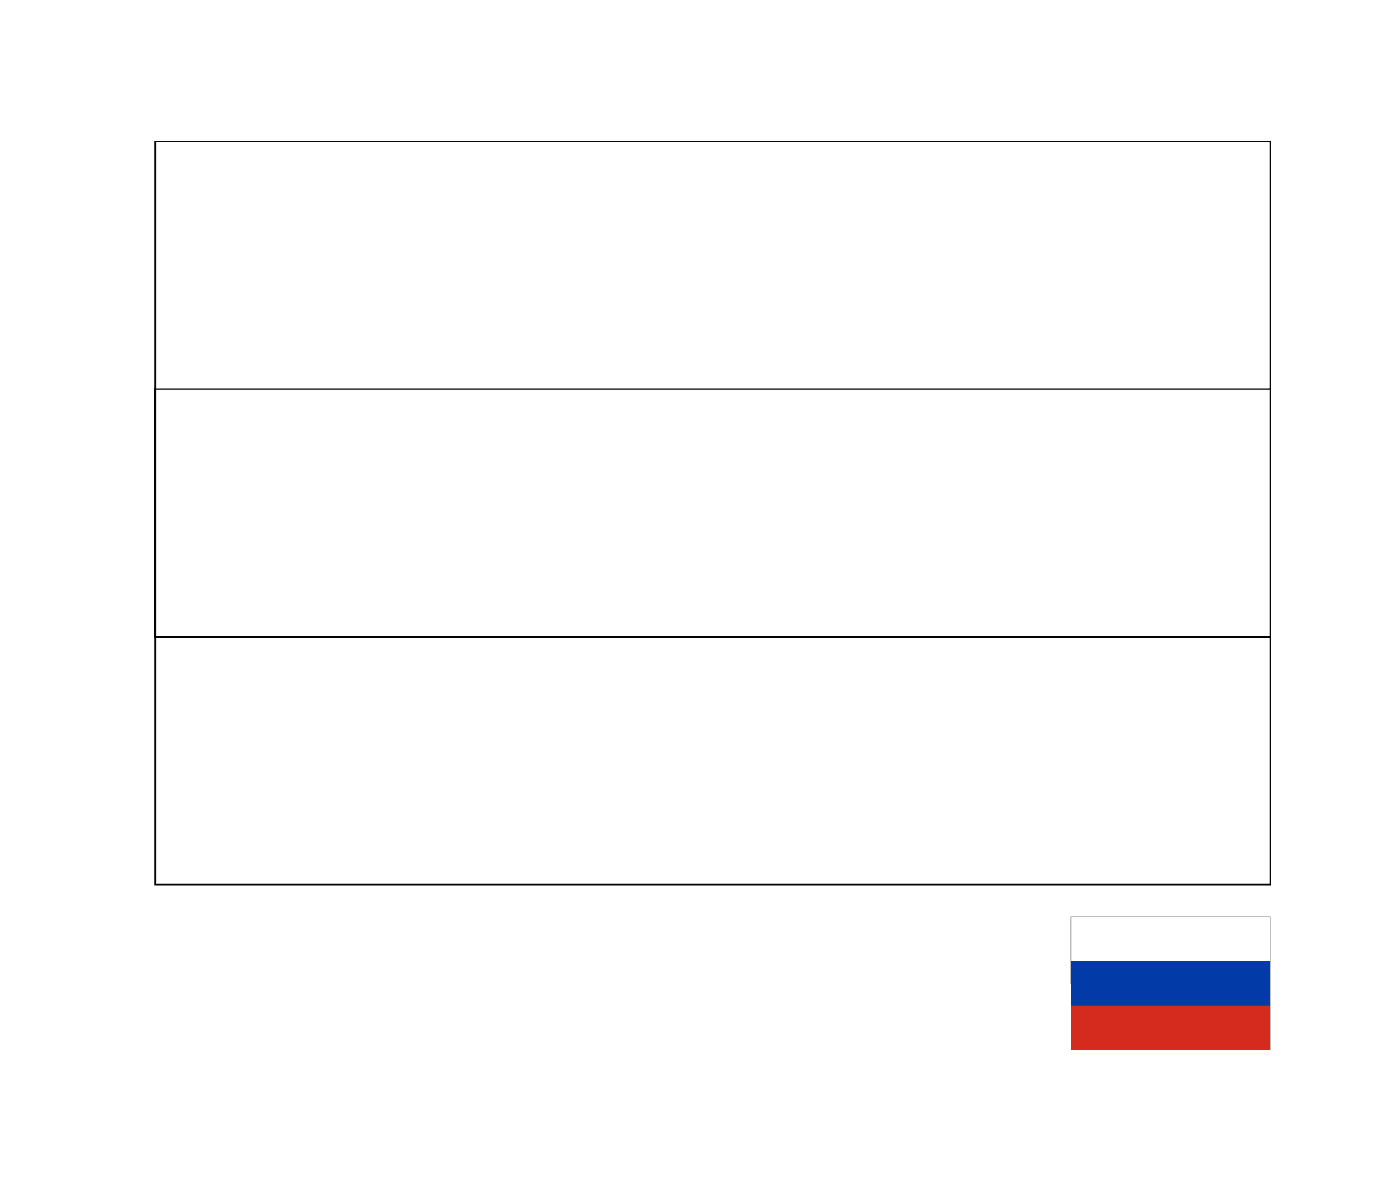  रूस का झंडा 